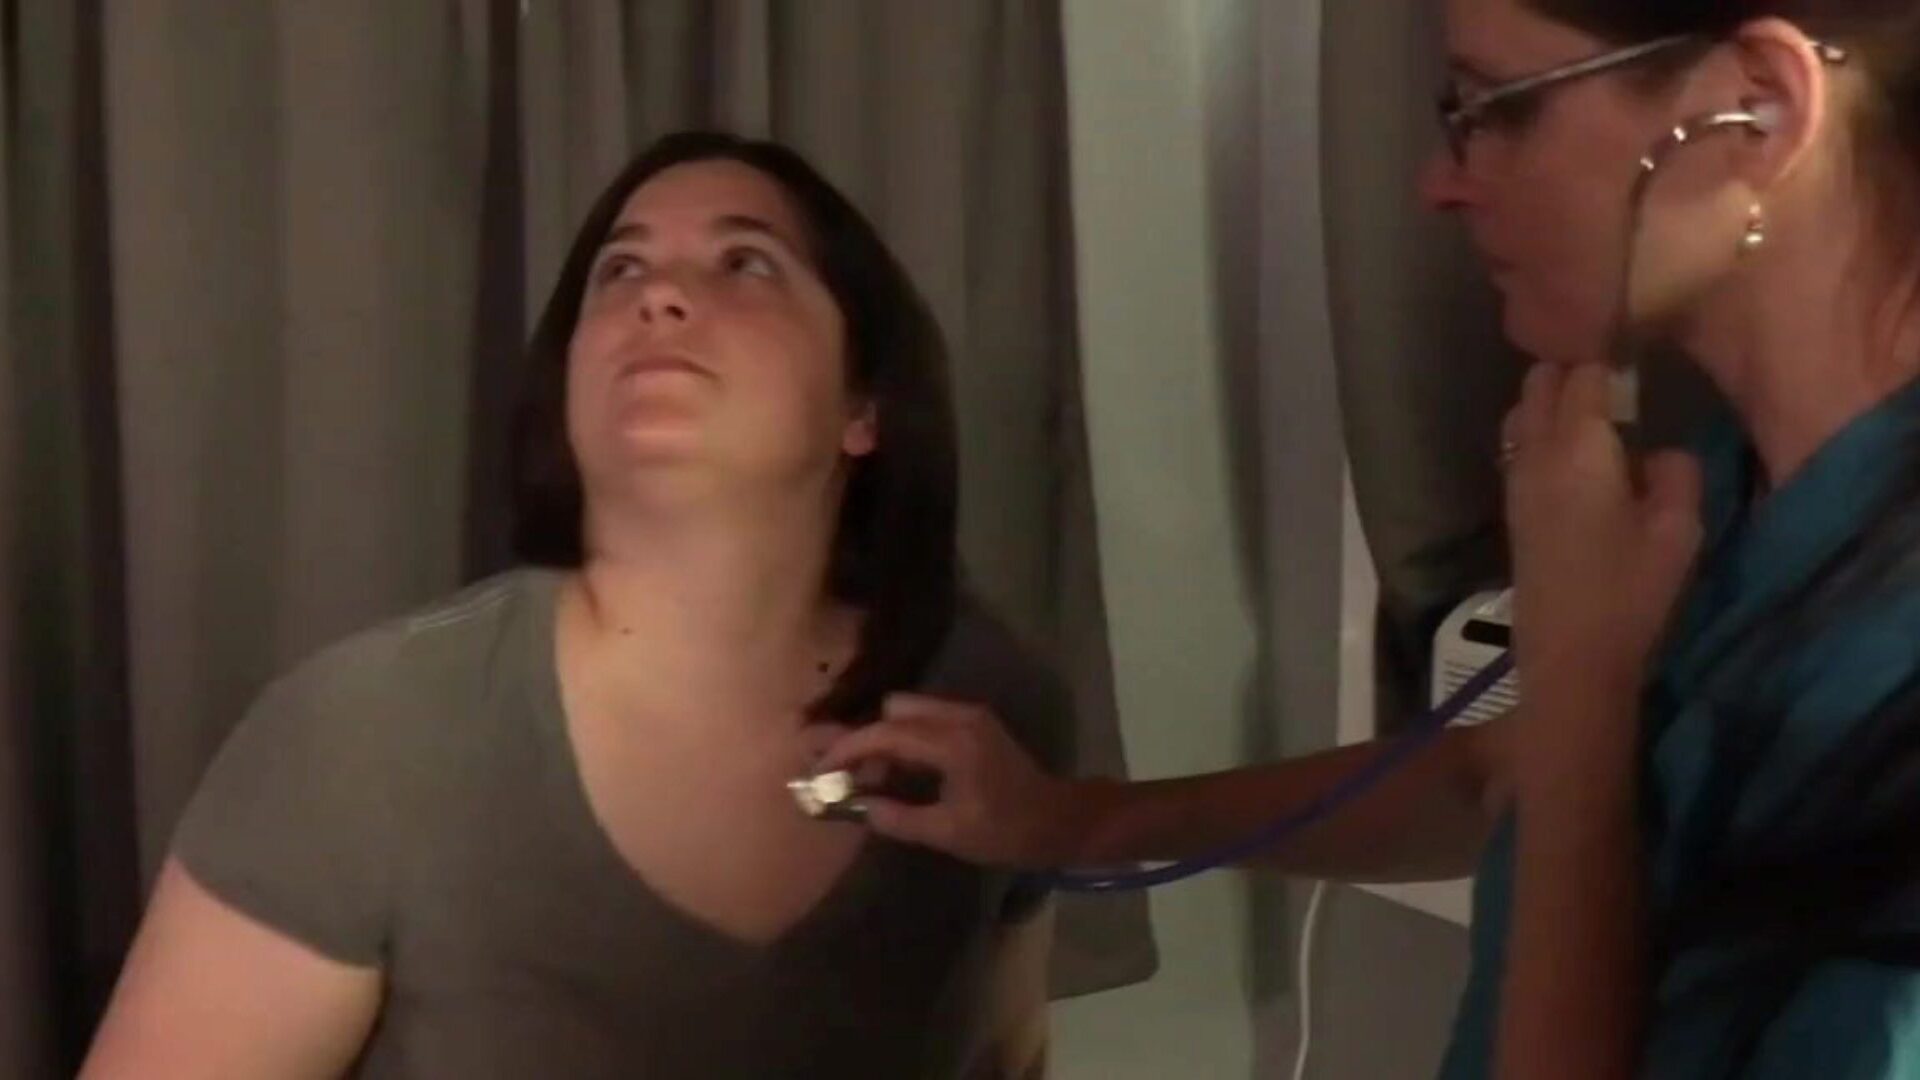 pielęgniarka garbi swoją klientkę od tyłu